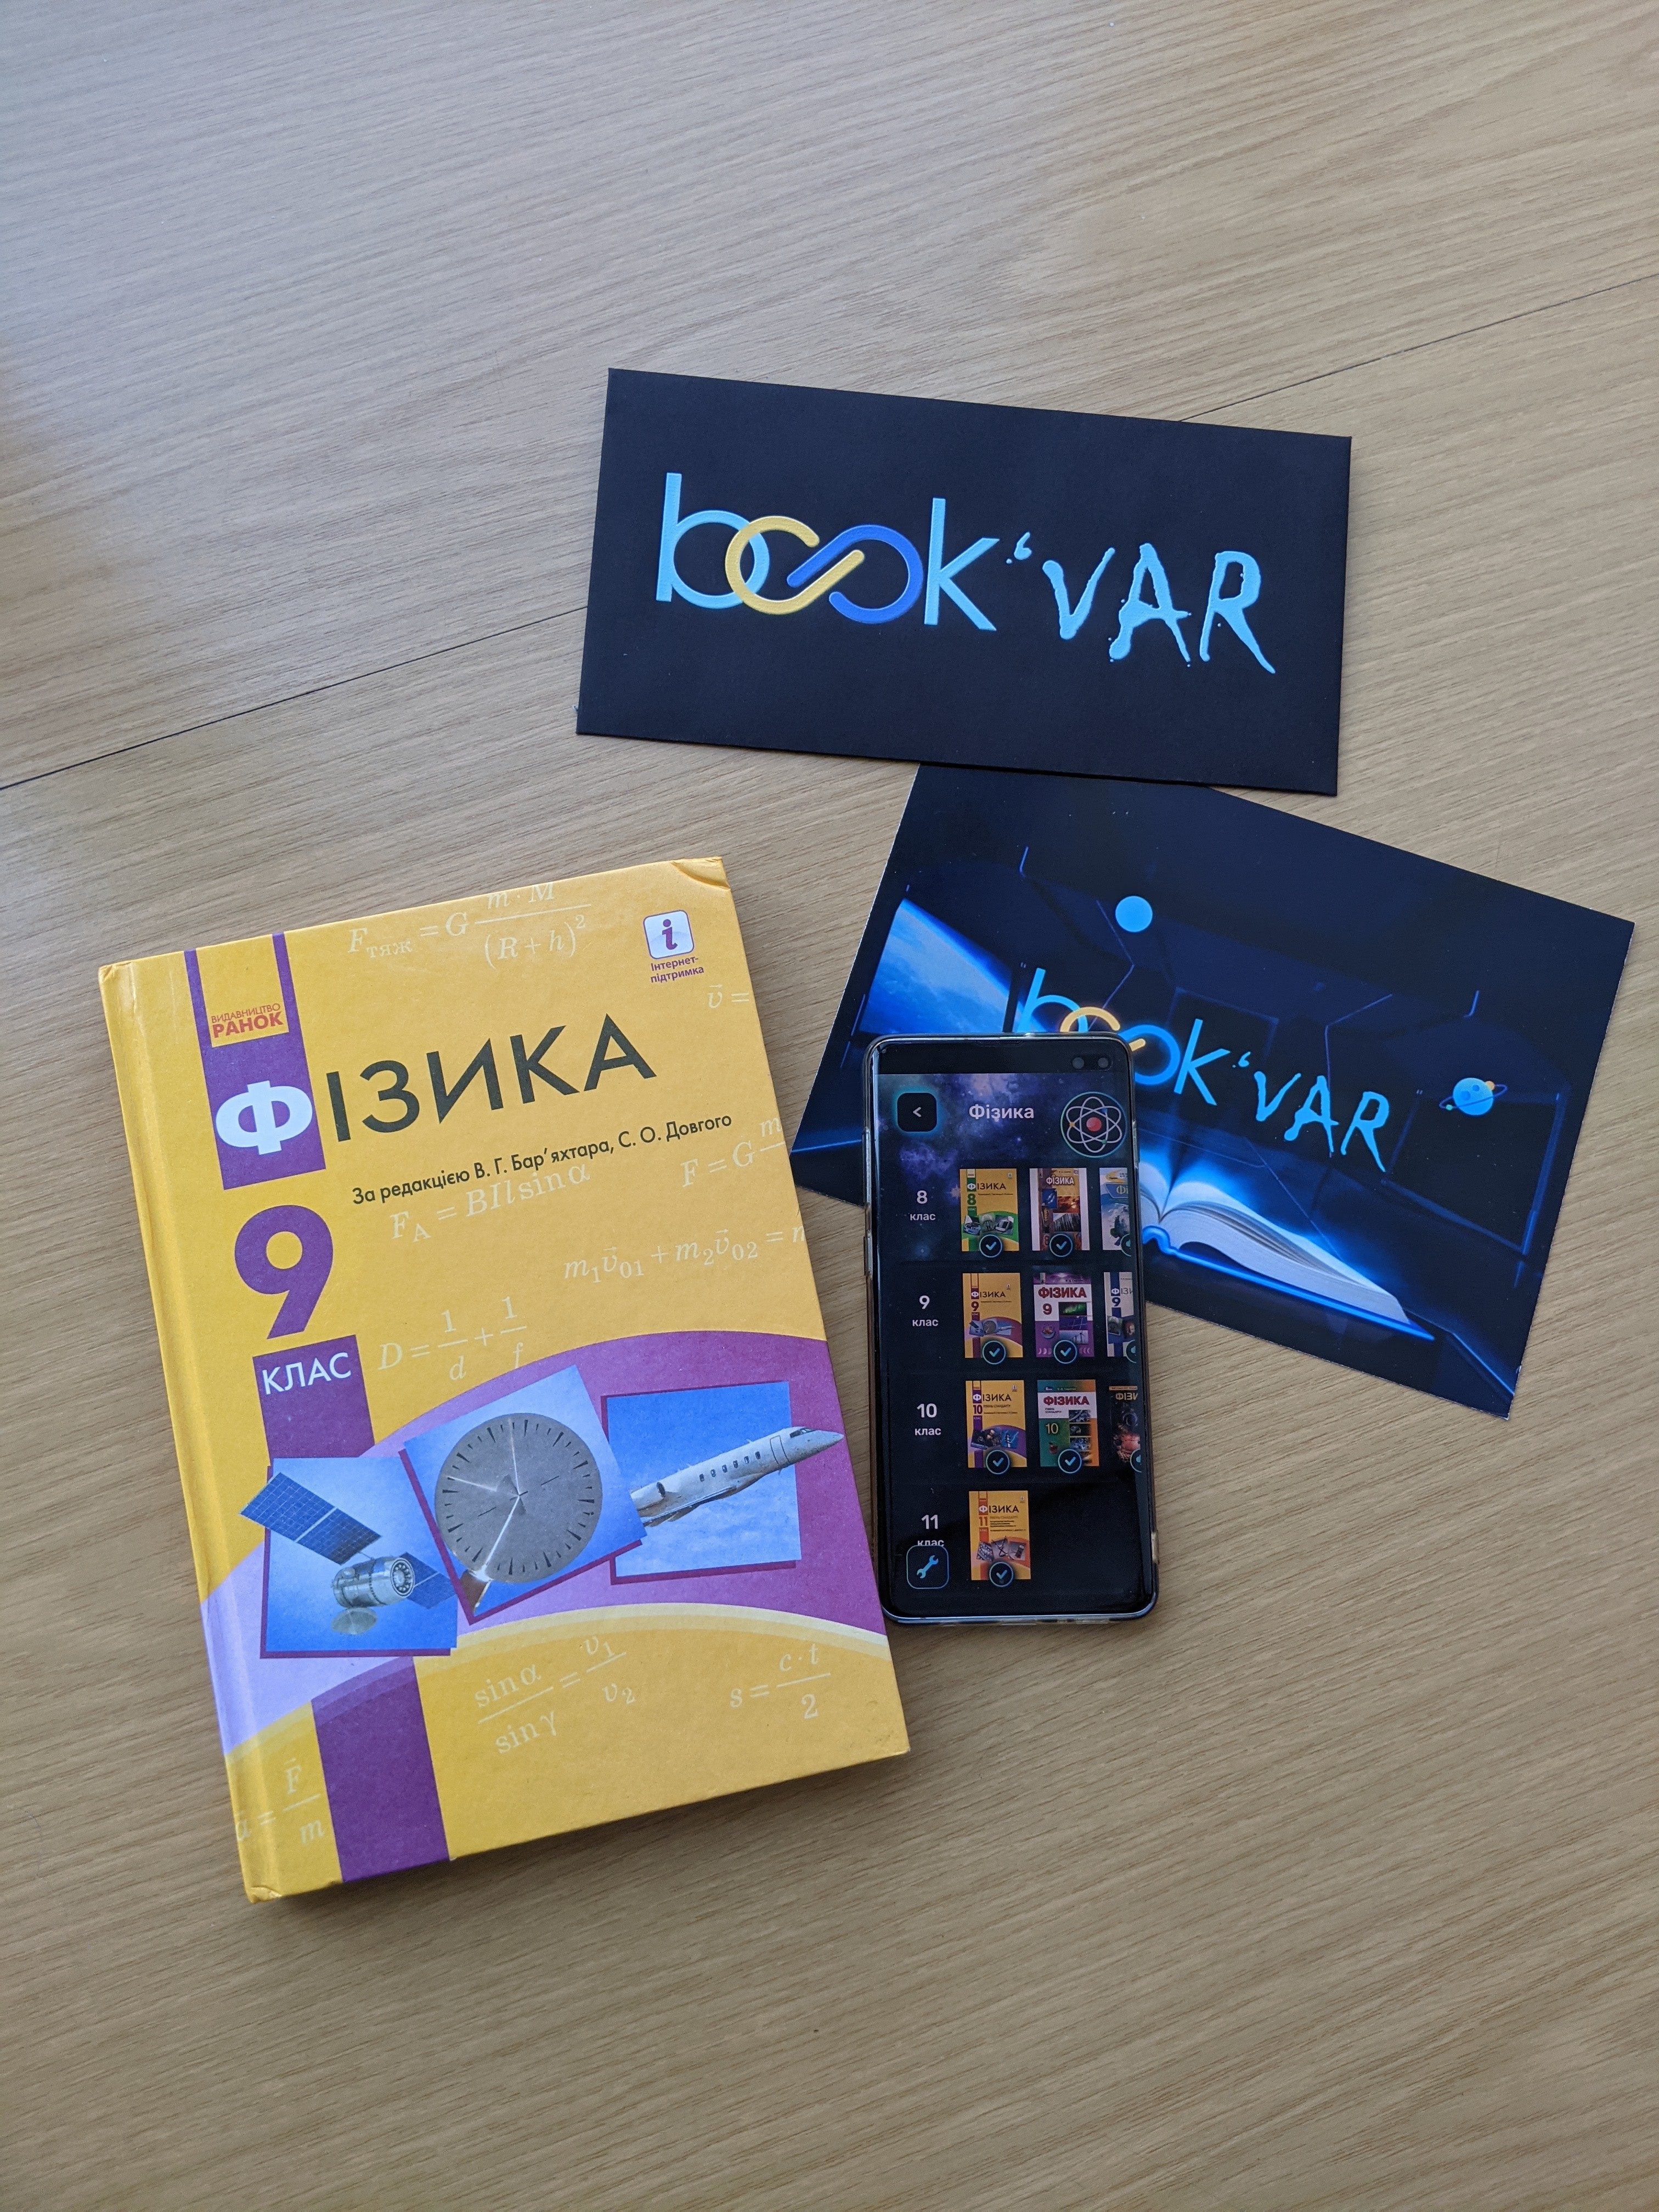 Фото: Заместитель председателя КГГА Валентин Мондриевский рассказал о новом онлайн-учебнике по физике «BookVAR», разработанный для учащихся школ с 8 по 11 классы